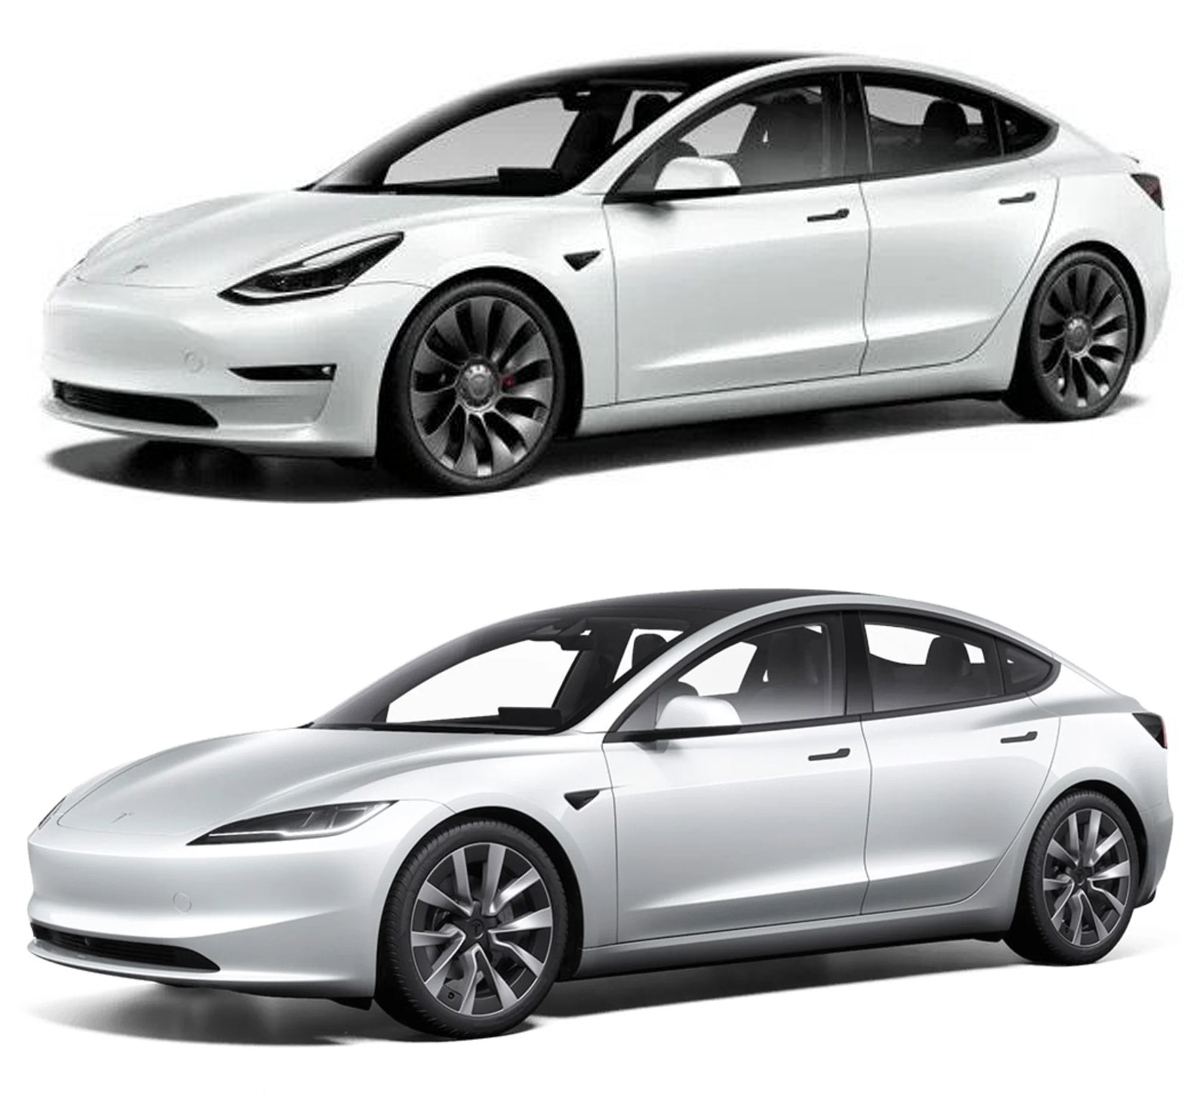 Tesla Model 3 Malaysia booking price